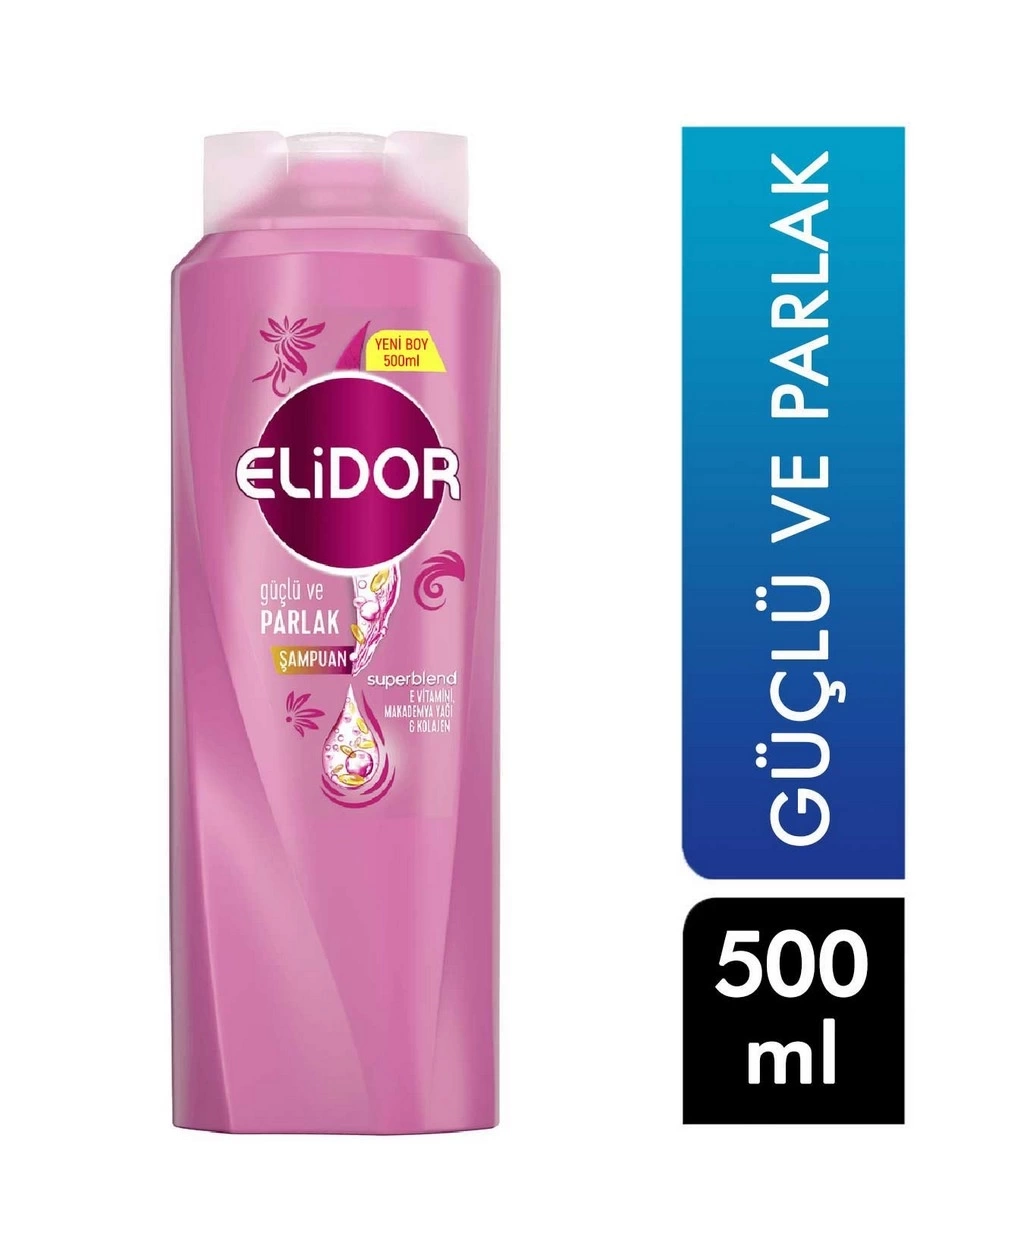 Elidor 500 Ml Güçlü Ve Parlak Şampuan